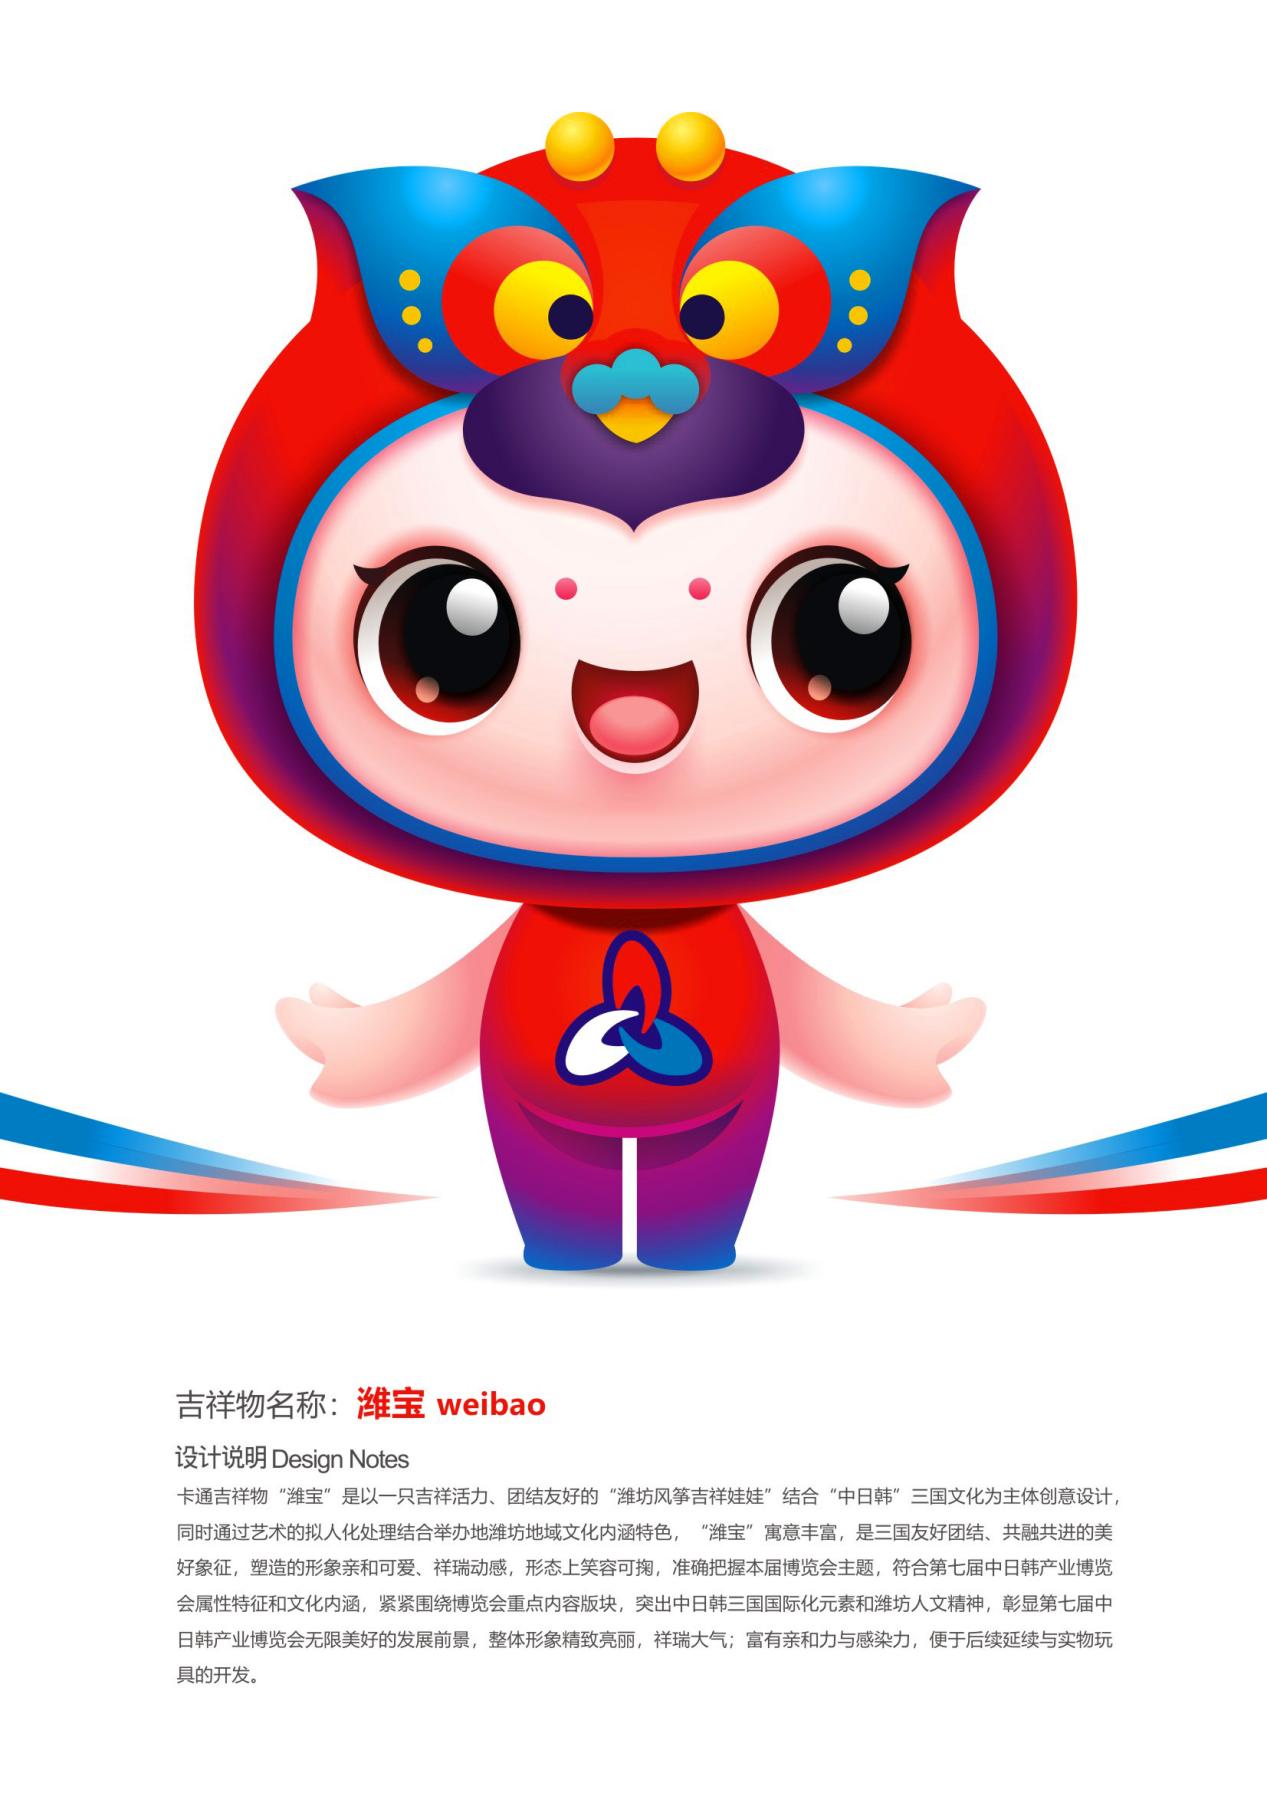 数字中国吉祥物__数字经济博览会吉祥物